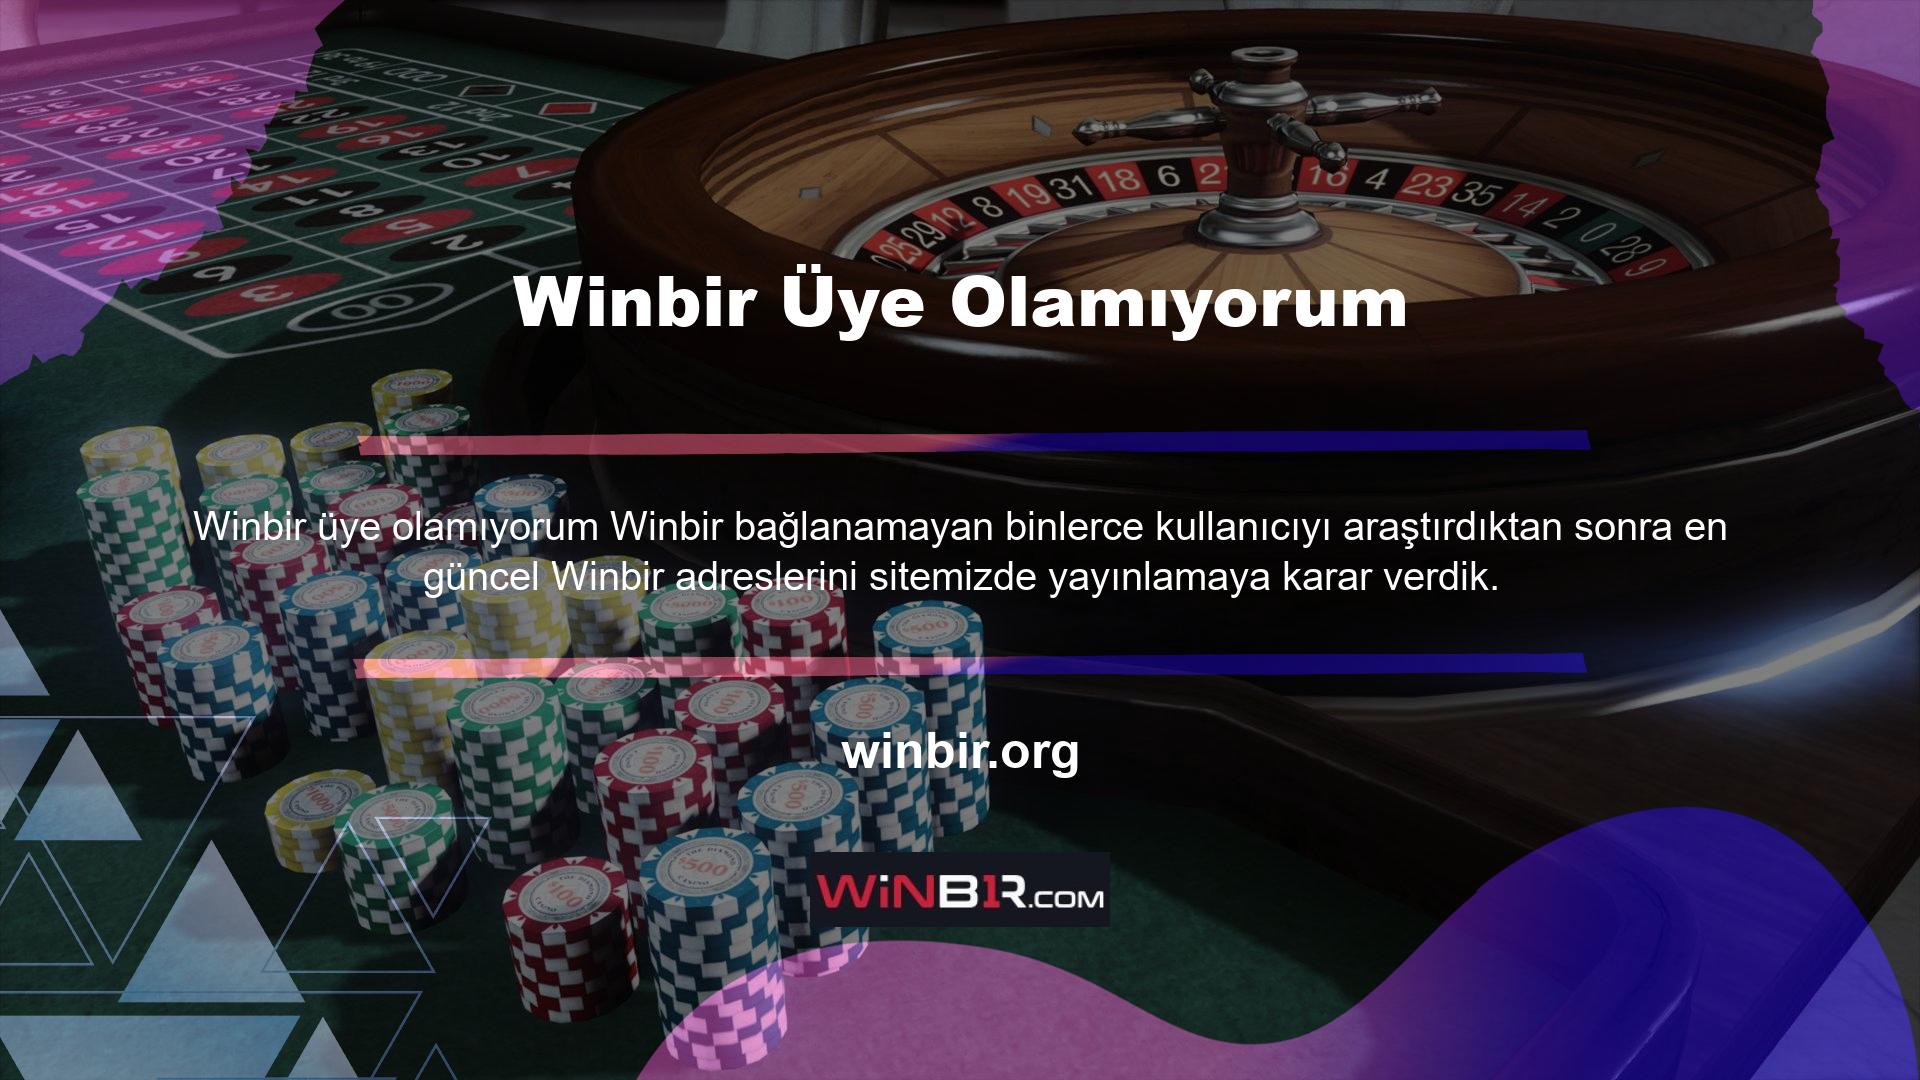 Genel olarak Türkiye'de yasa dışı hizmetler sunan lisanslı ve güvenilir bir oyun platformu olarak tanımlanan Winbir üye olun, ücretsiz hesap açın ve yüzlerce Winbir alternatifine ve seçeneğine erişin